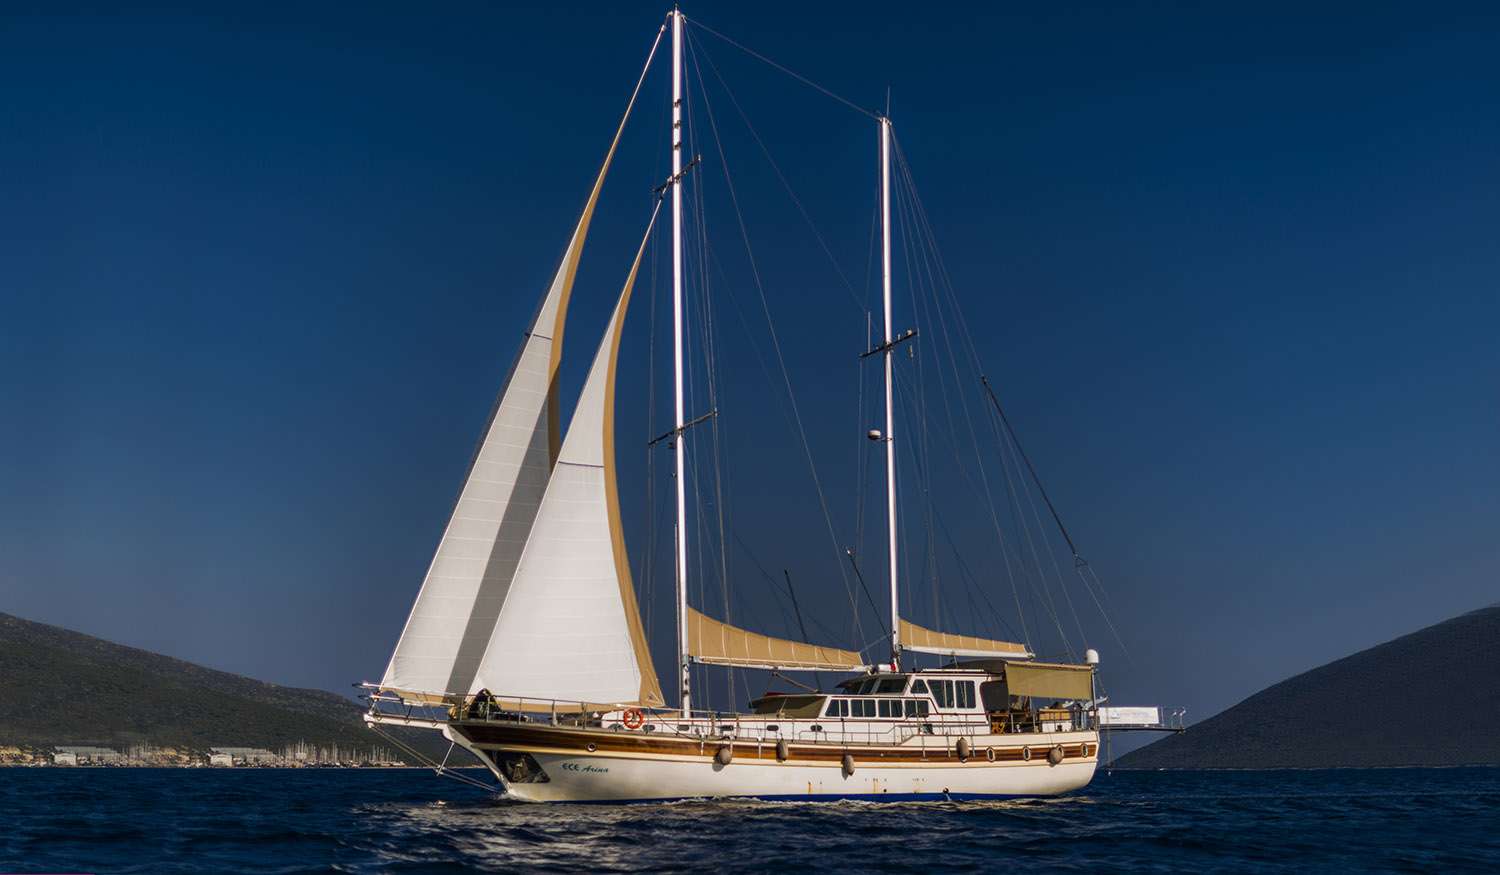 ece arina - Yacht Charter Palaio Faliro & Boat hire in Greece 1